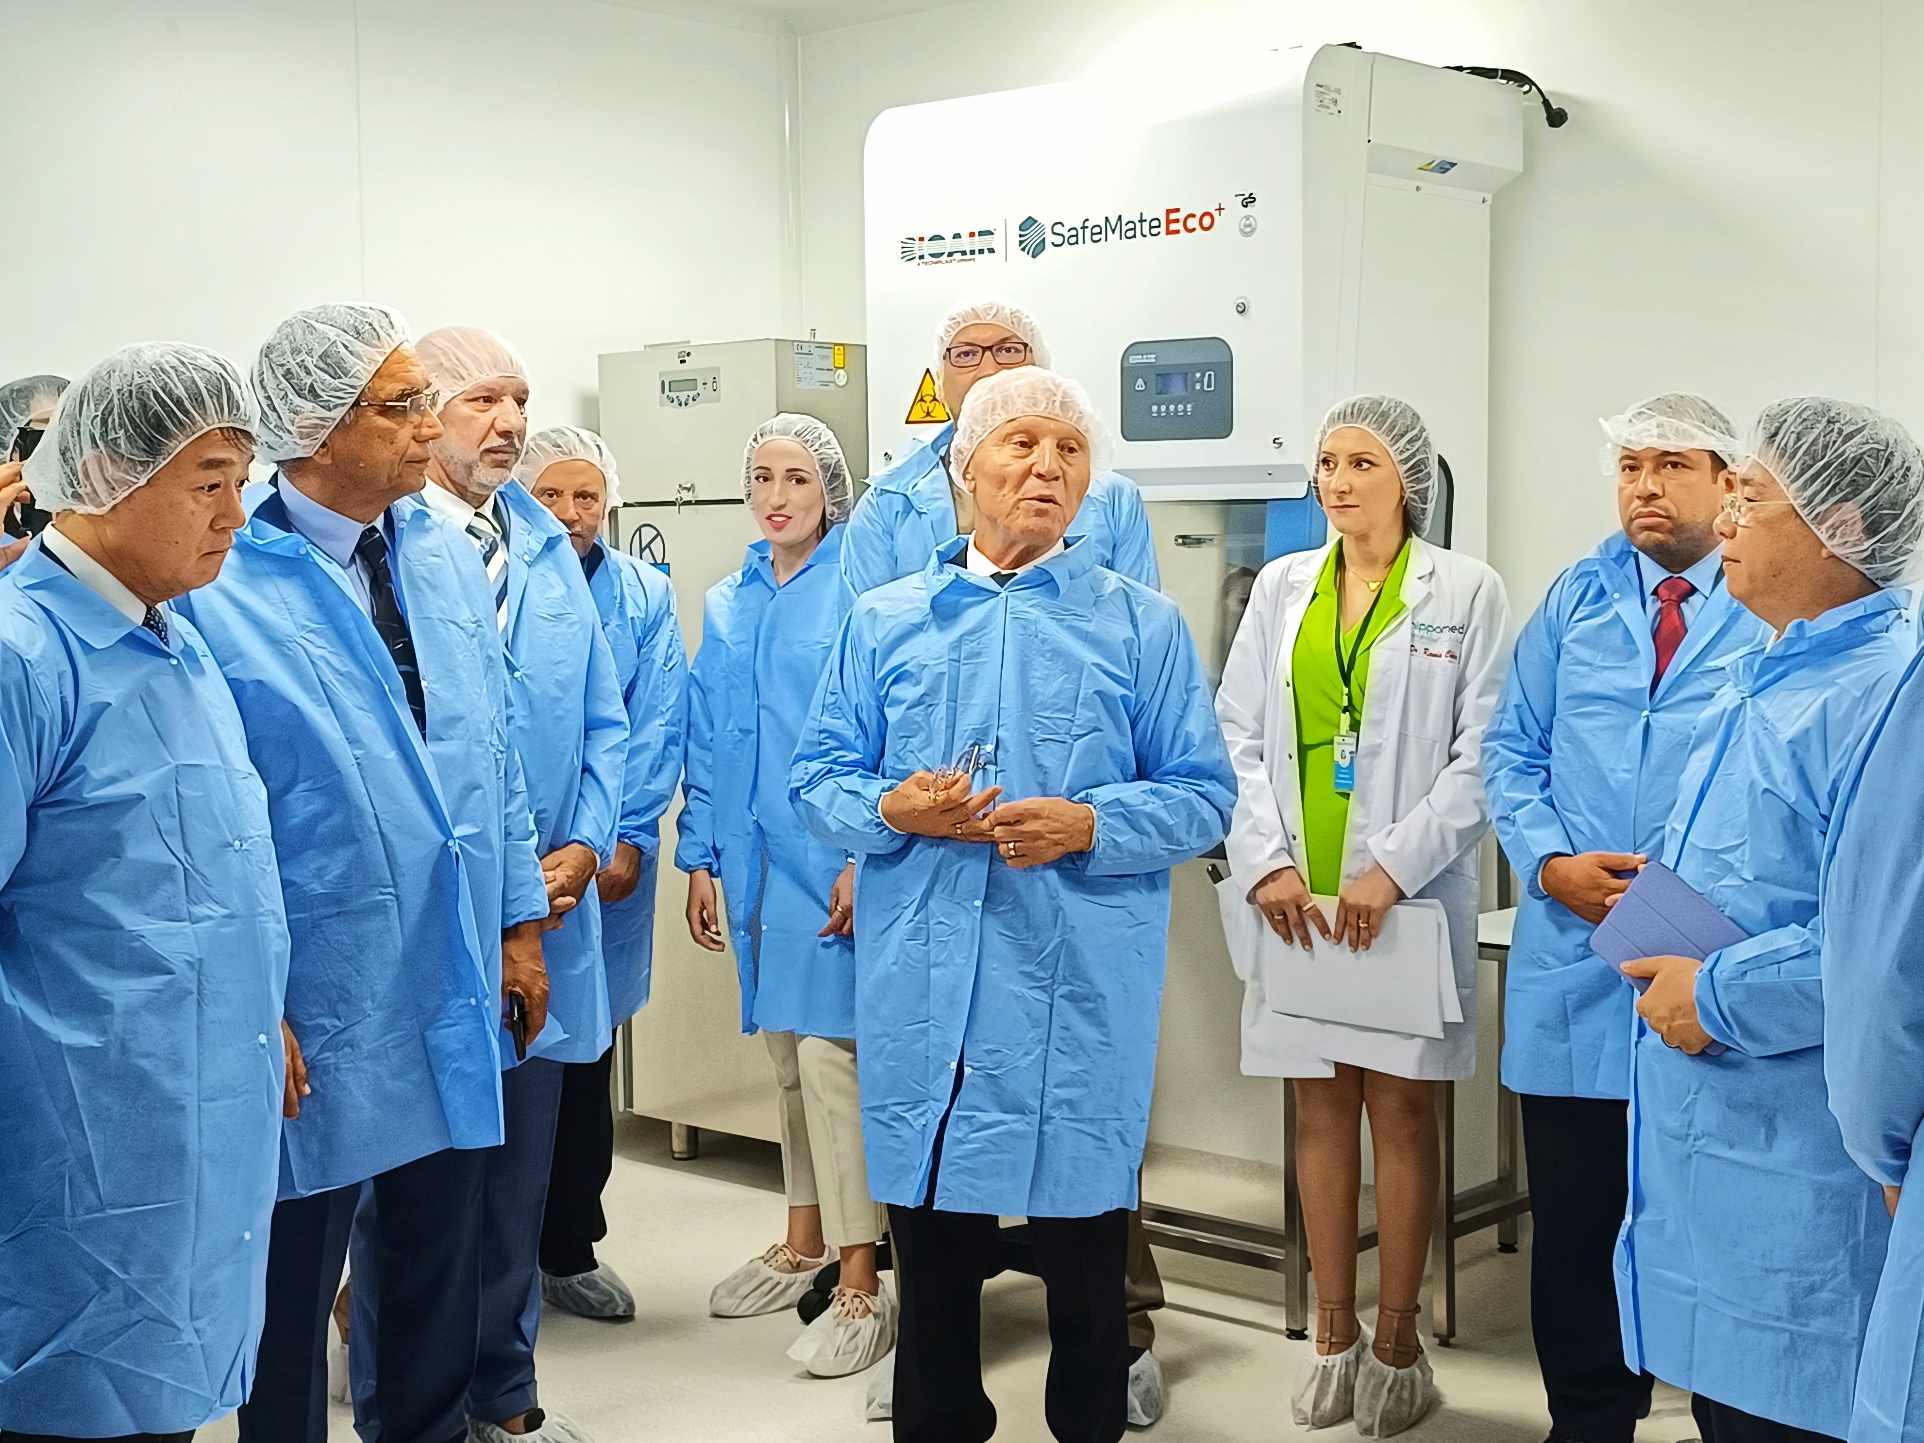 بالشراكة مع اليابان:  افتتاح أول وحدة إنتاج "كواشف" بيولوجية في تونس  